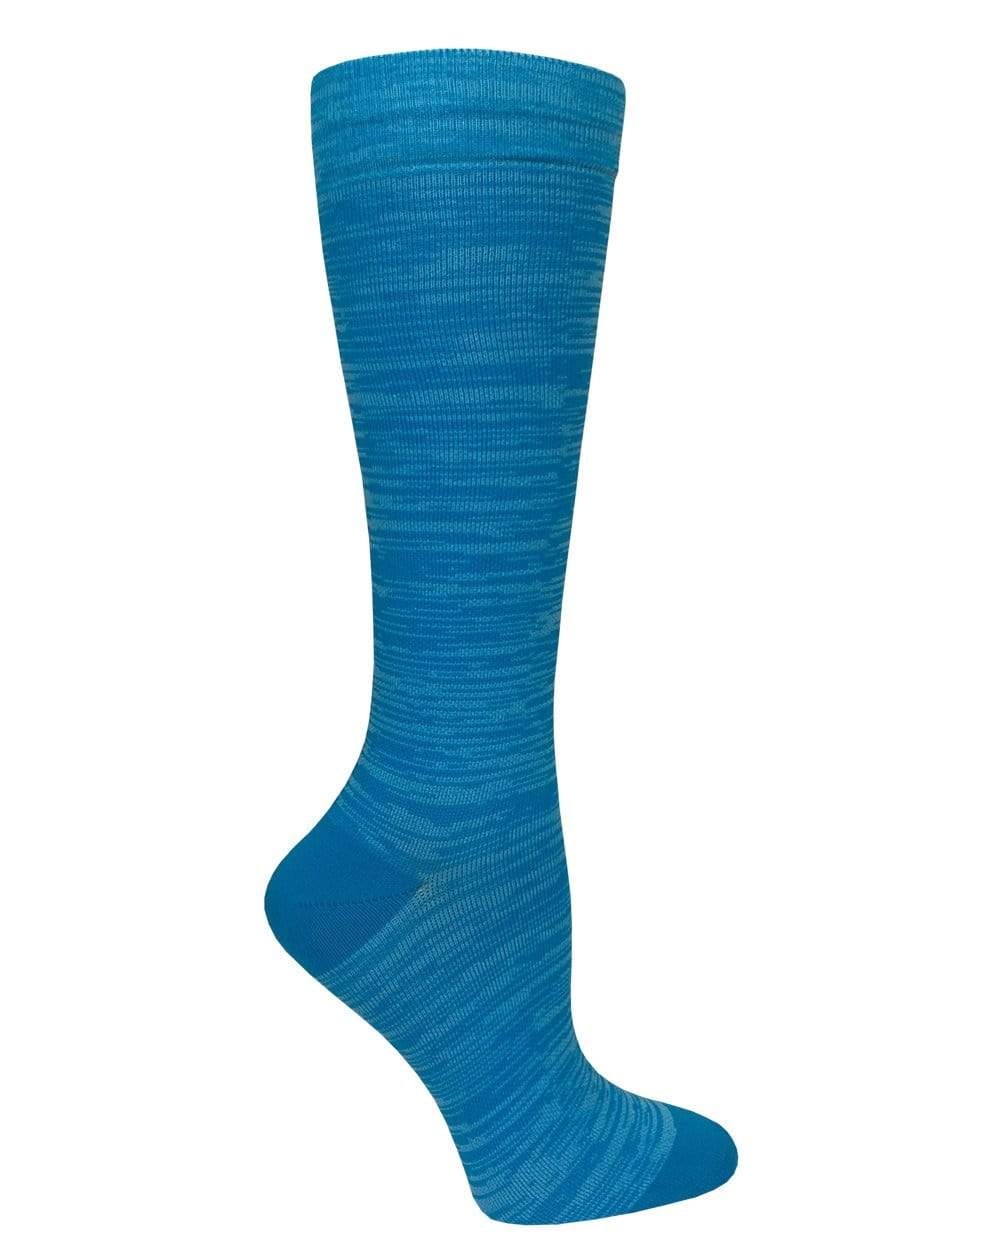 Prestige Medical Socks Static Blue Prestige 30cm Premium Knit Compression Socks